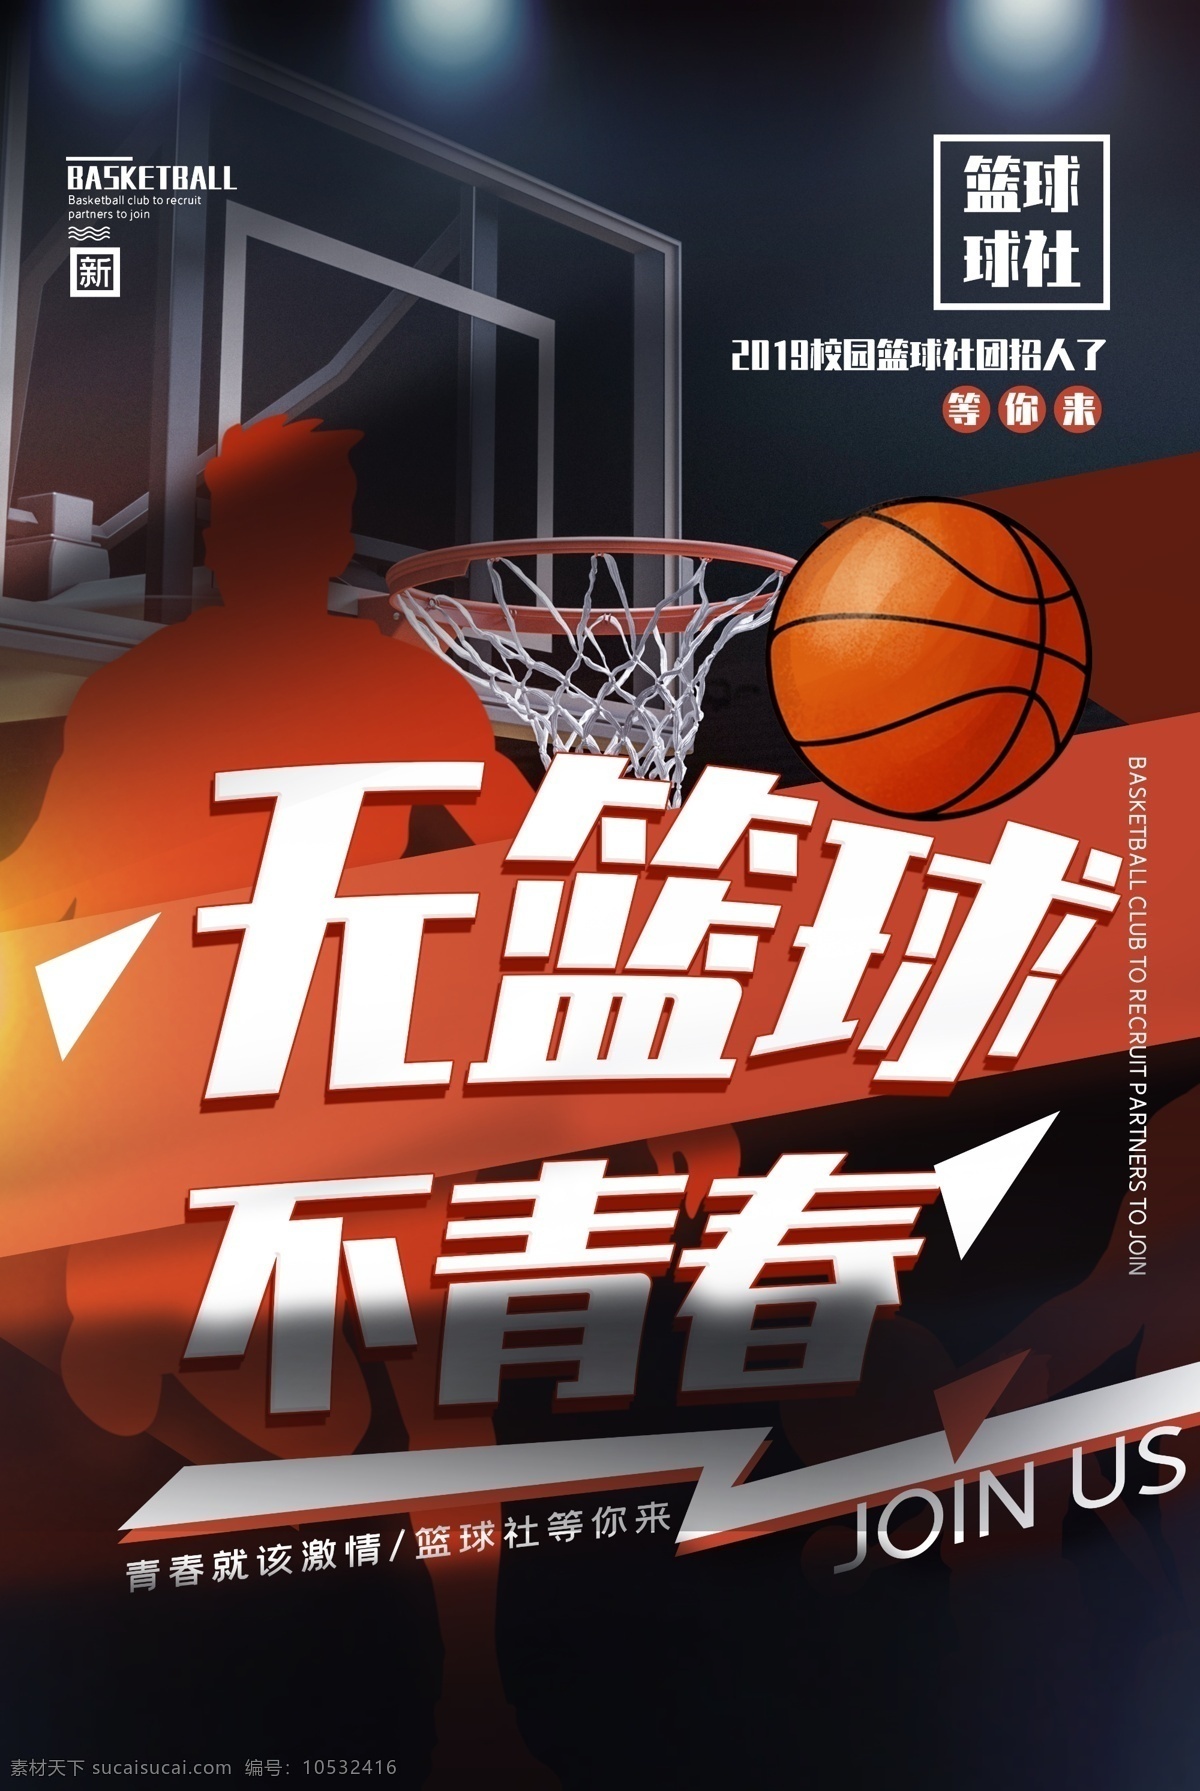 无 篮球 不 青春 活动 宣传海报 无篮球 不青春 宣传 海报